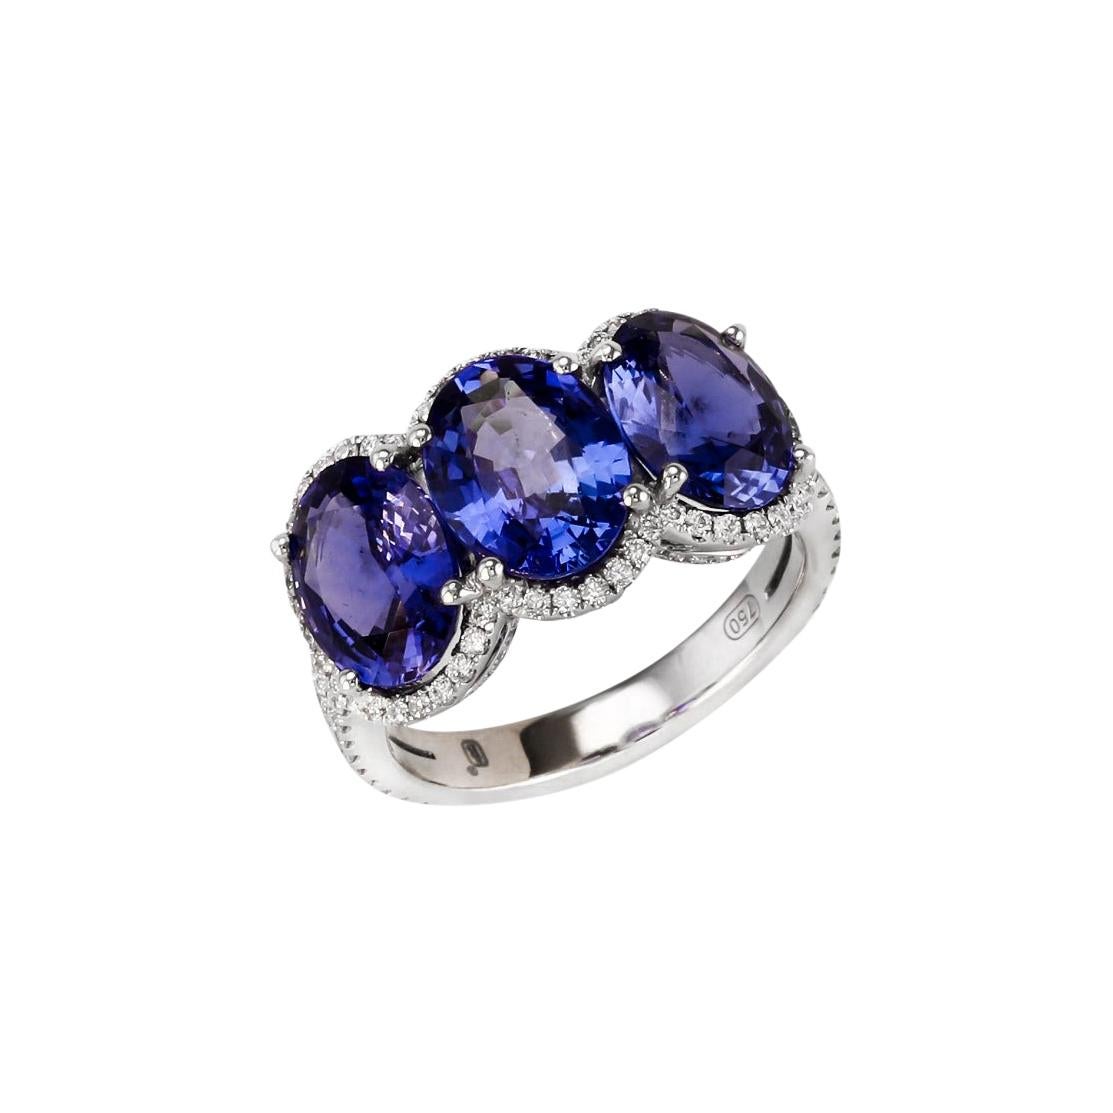 3.28 Carat Oval Sapphire Diamond Three-Stone Ring